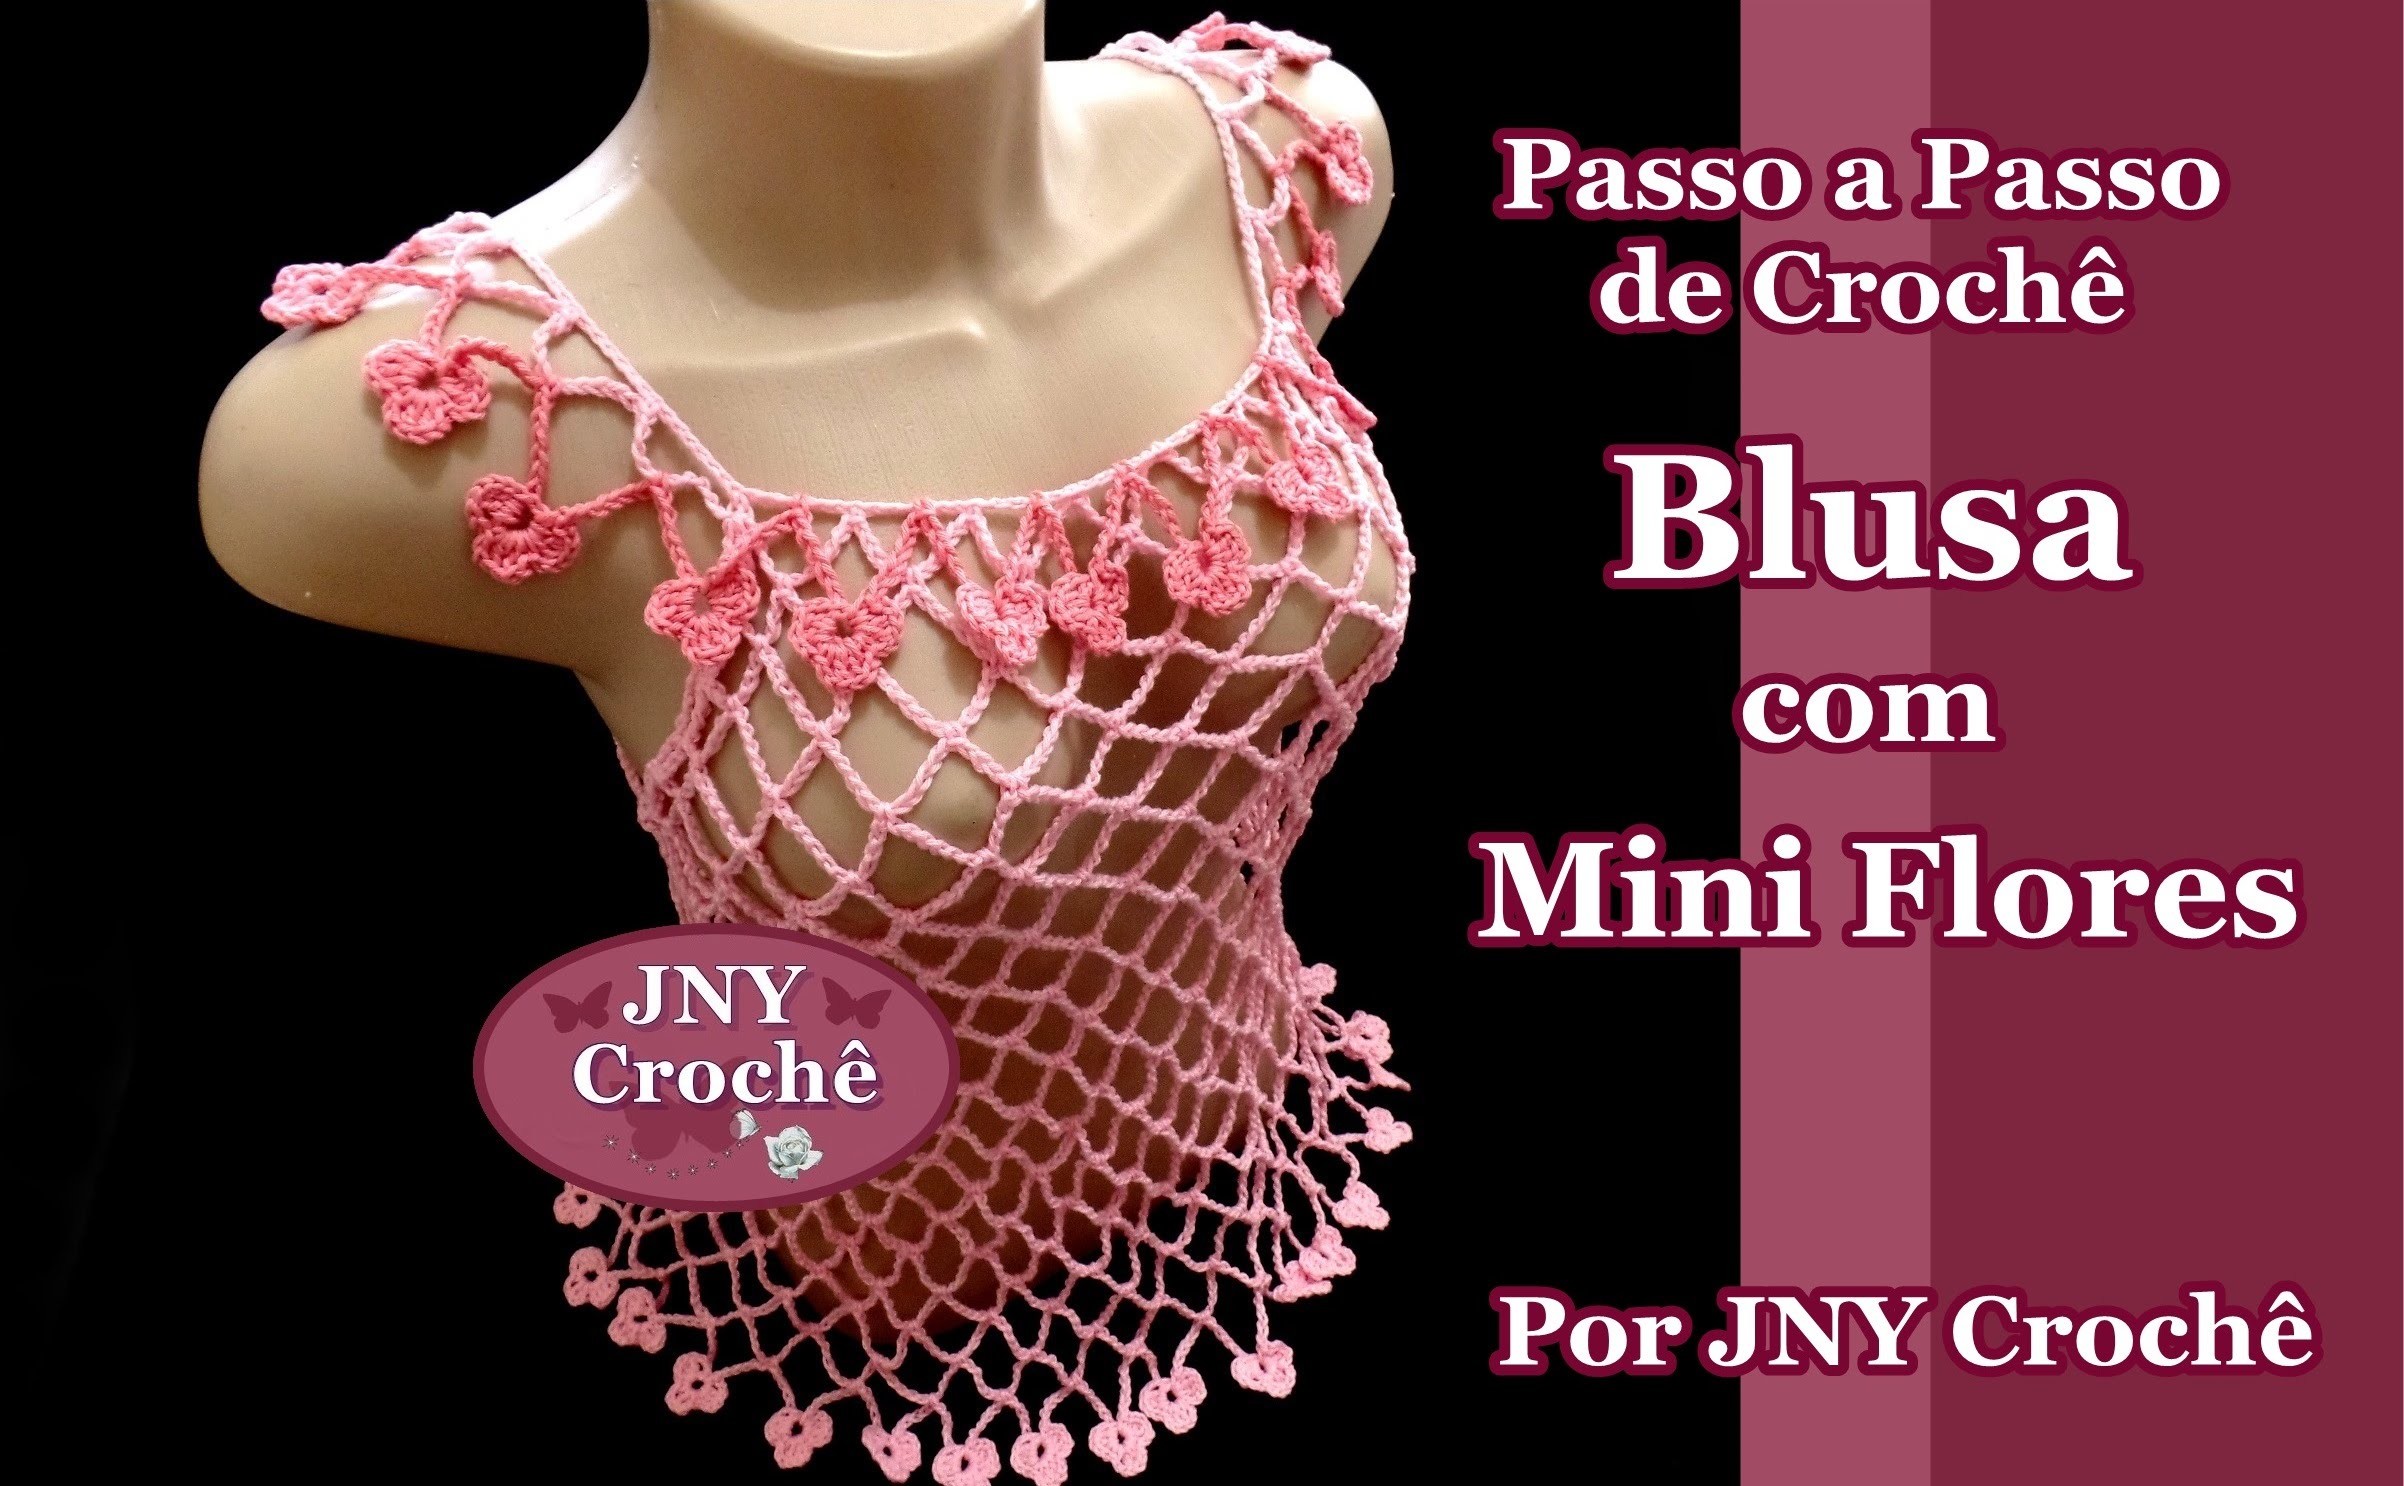 Passo a Passo de Crochê Blusa com Mini Flores por JNY Crochê